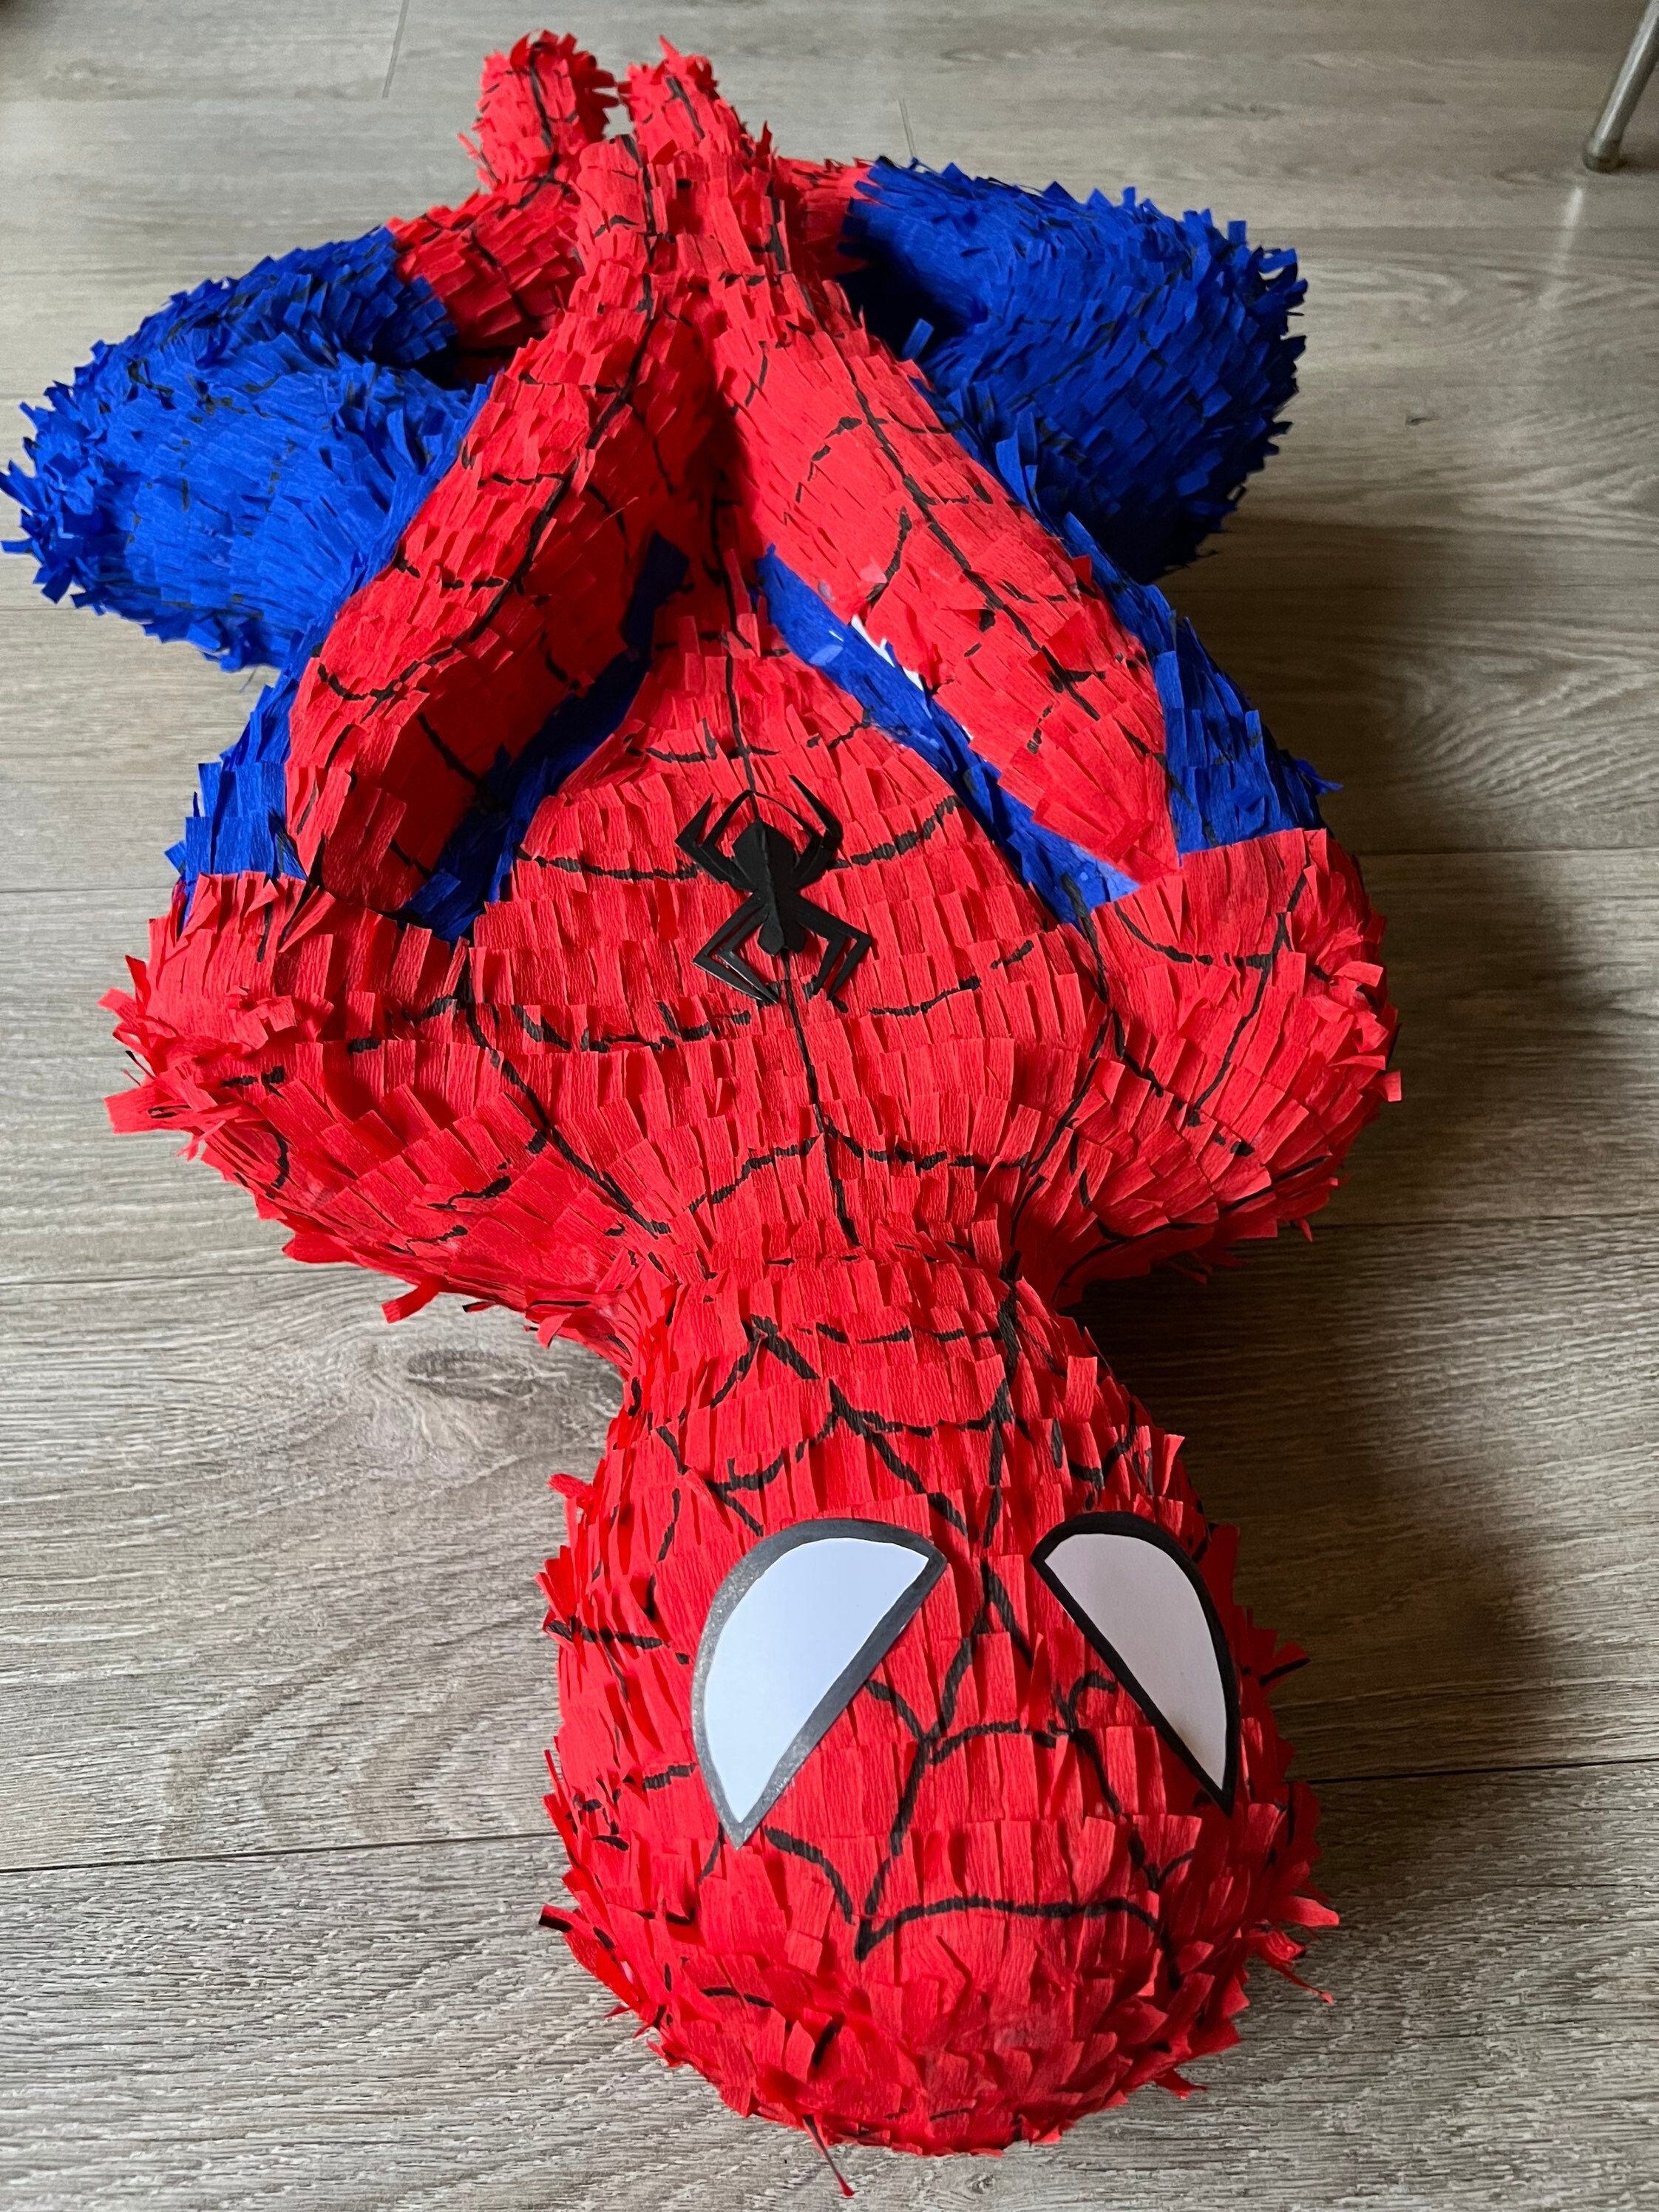 Masque spider-man enfant - Fiesta Republic